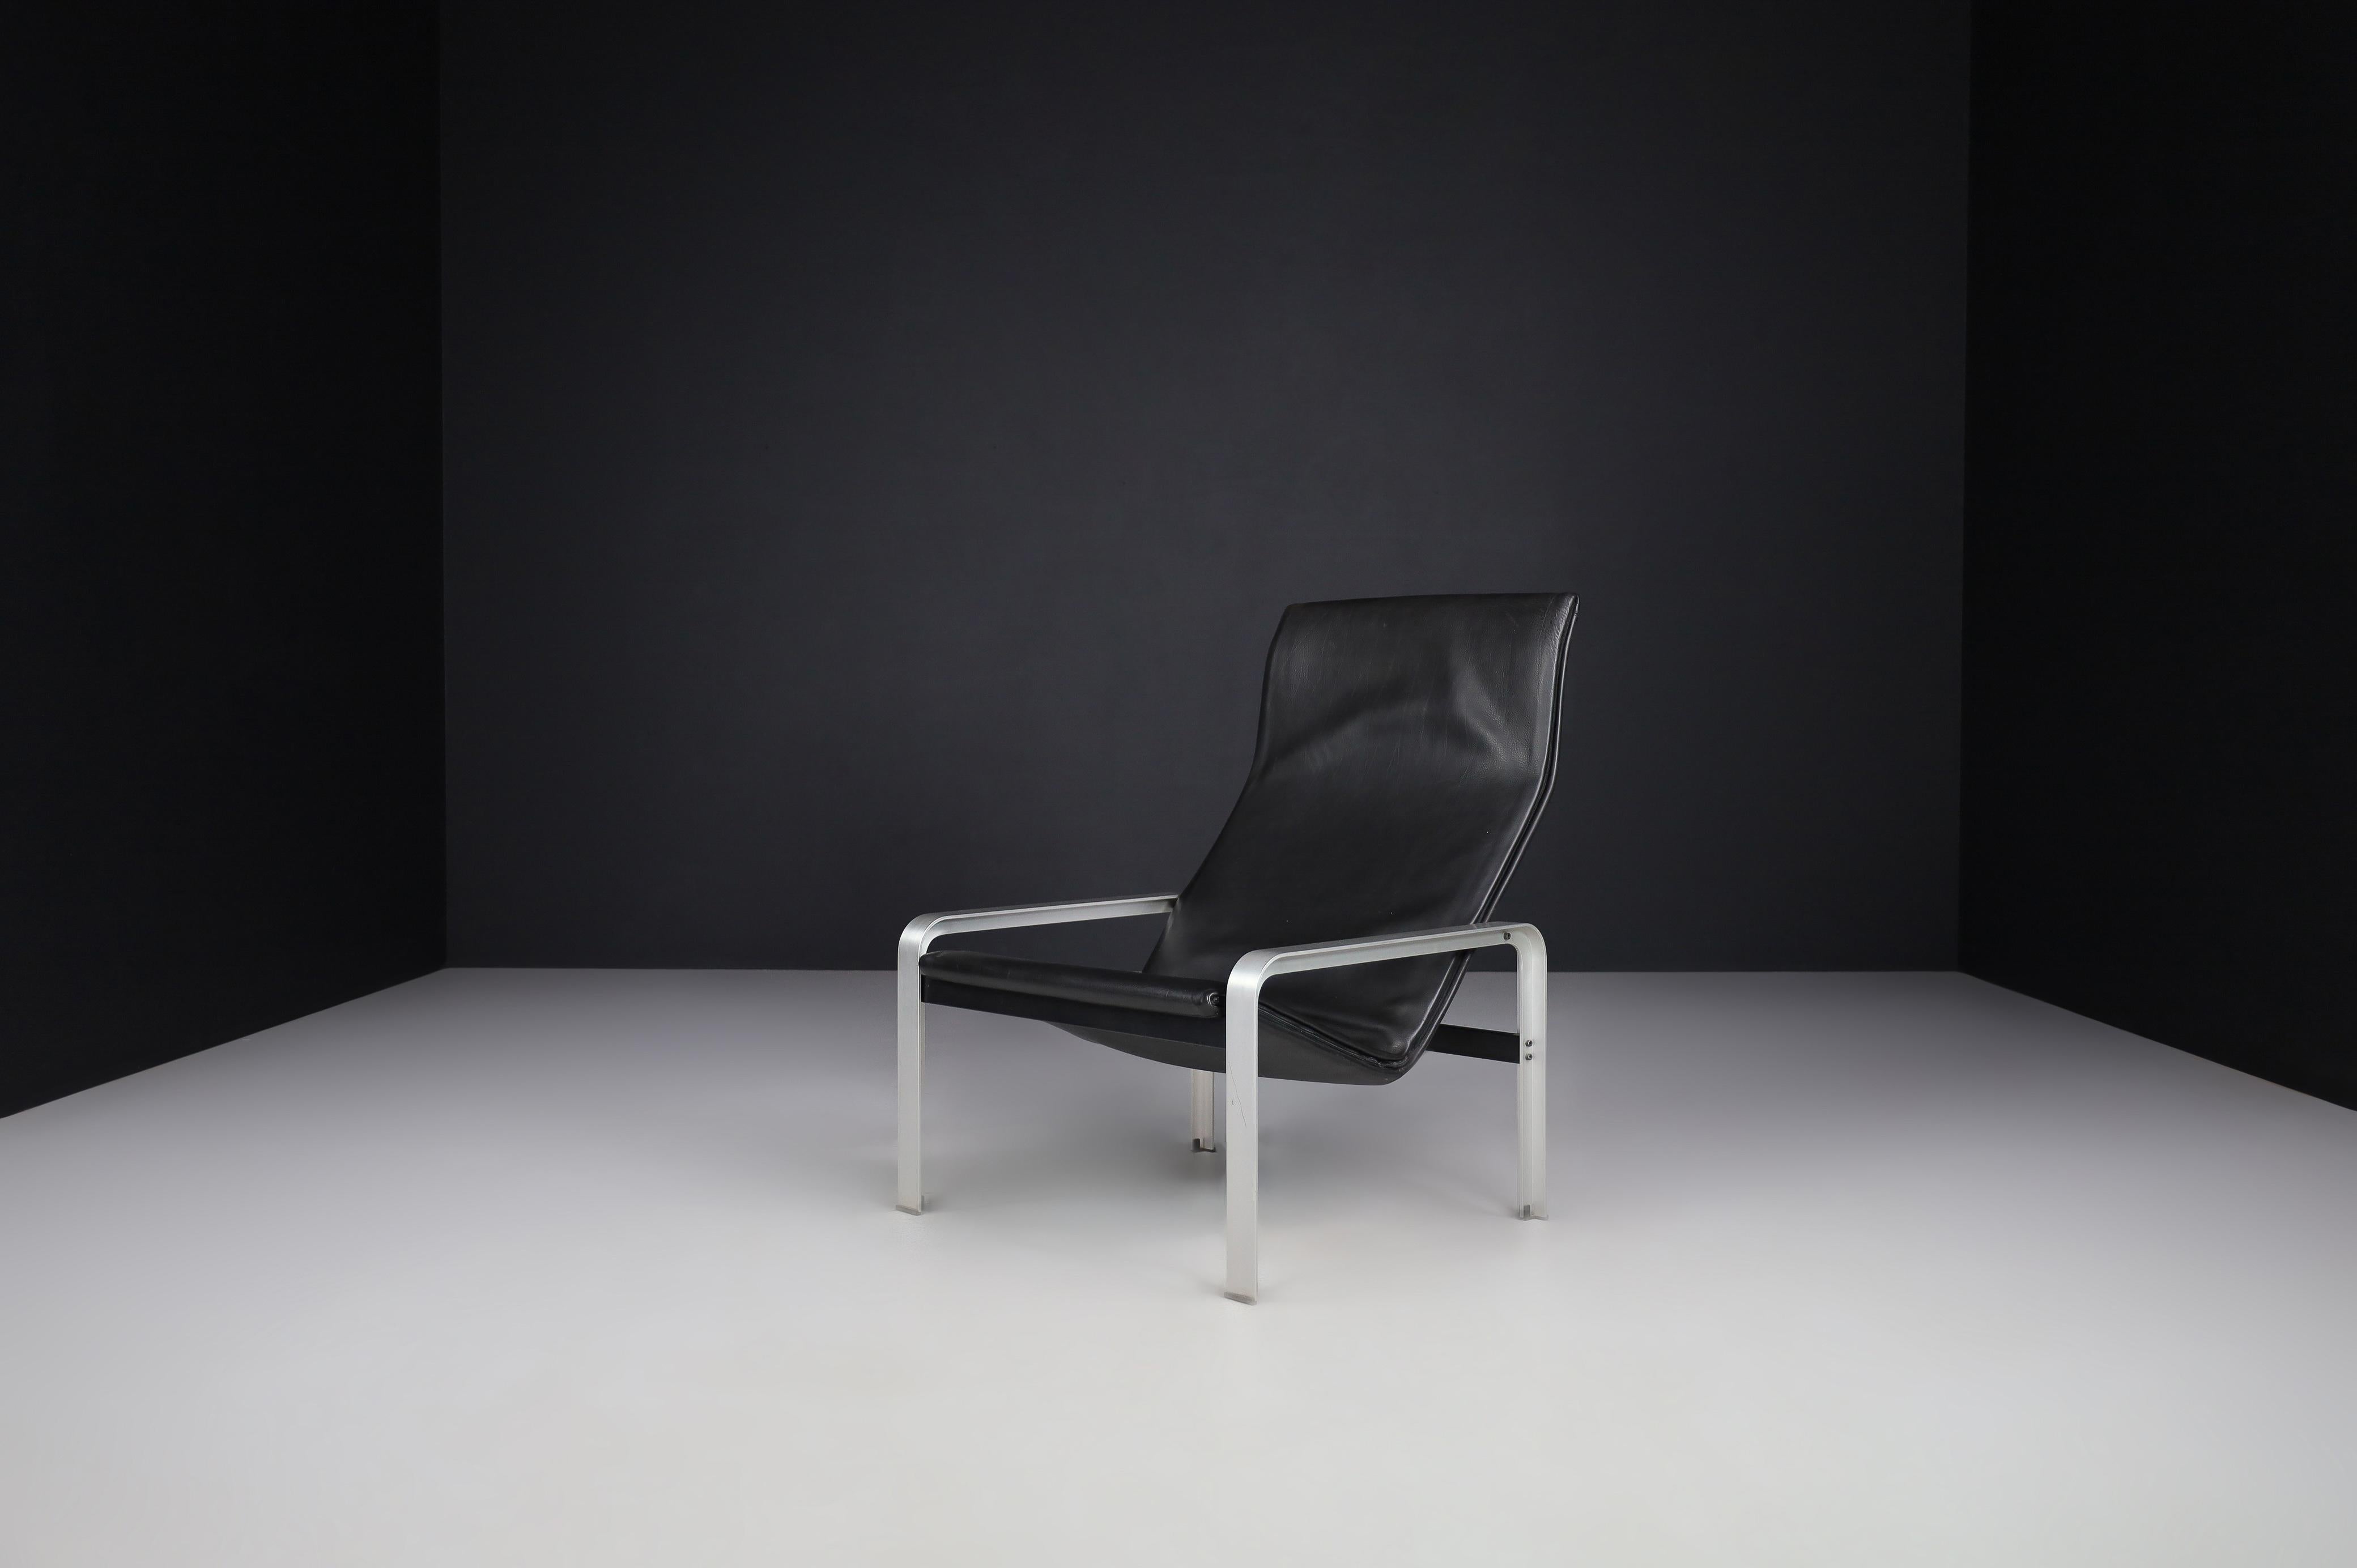 Chaise de salon en cuir noir Matteo Grassi, Italie, 1970

Il est constitué d'un cadre métallique recouvert d'un épais cuir de selle noir. Présente une légère usure due à l'âge. Extrêmement confortable, chic et très représentatif de la période de